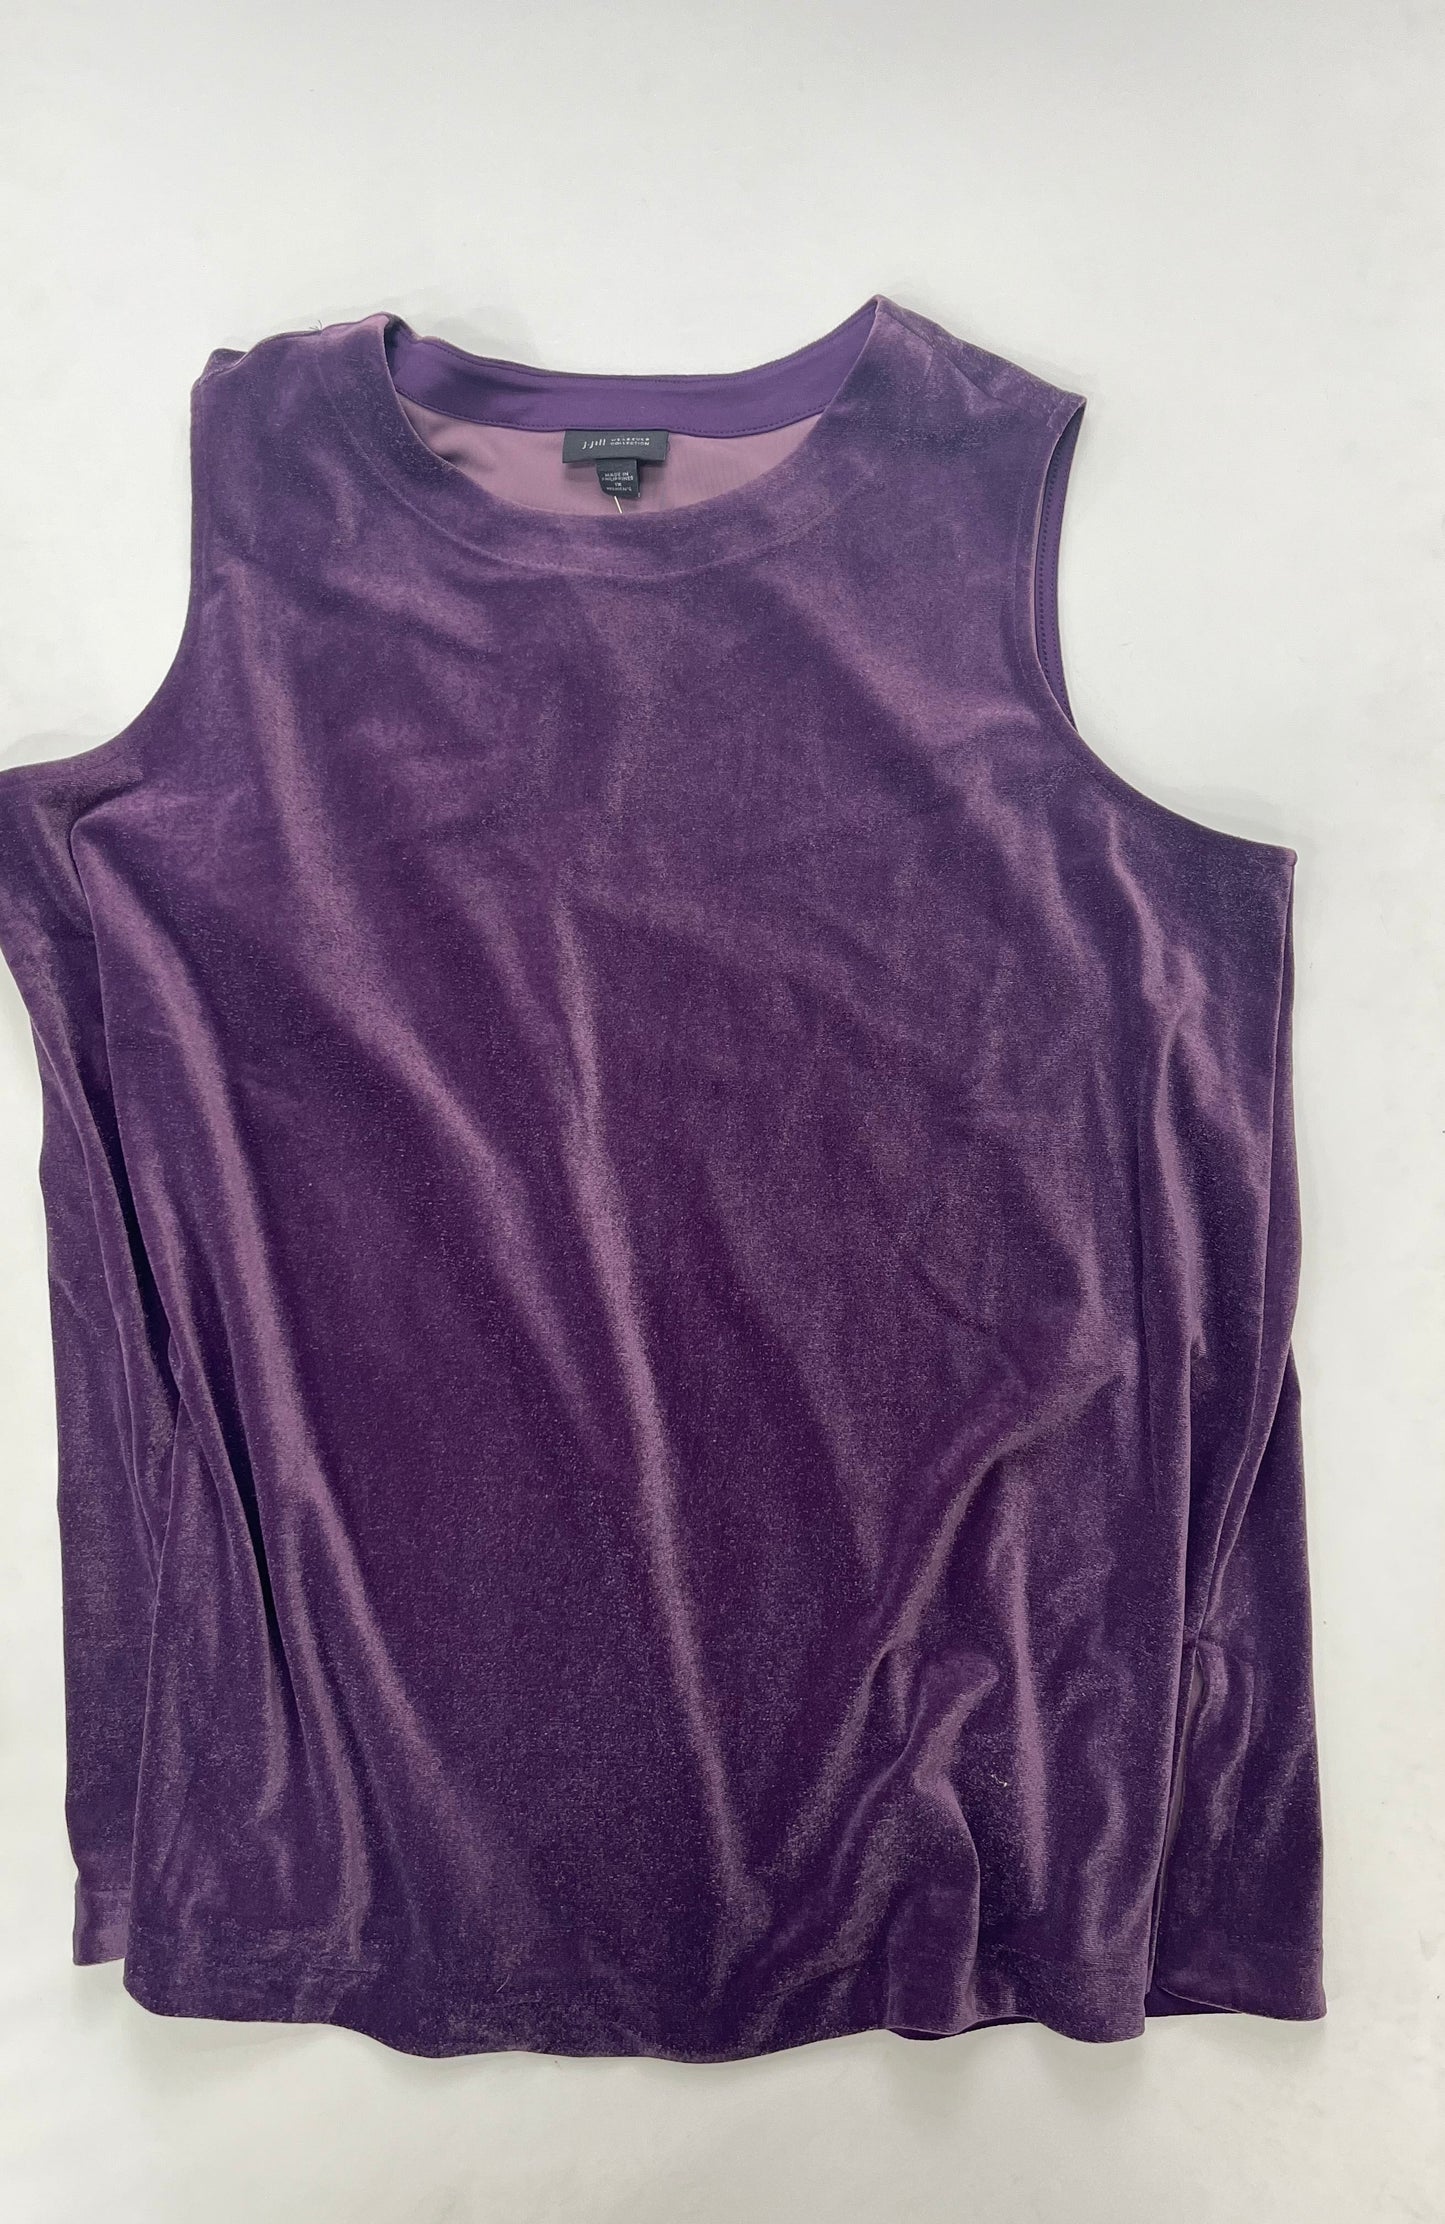 Purple Top Sleeveless J Jill NWT, Size 1x